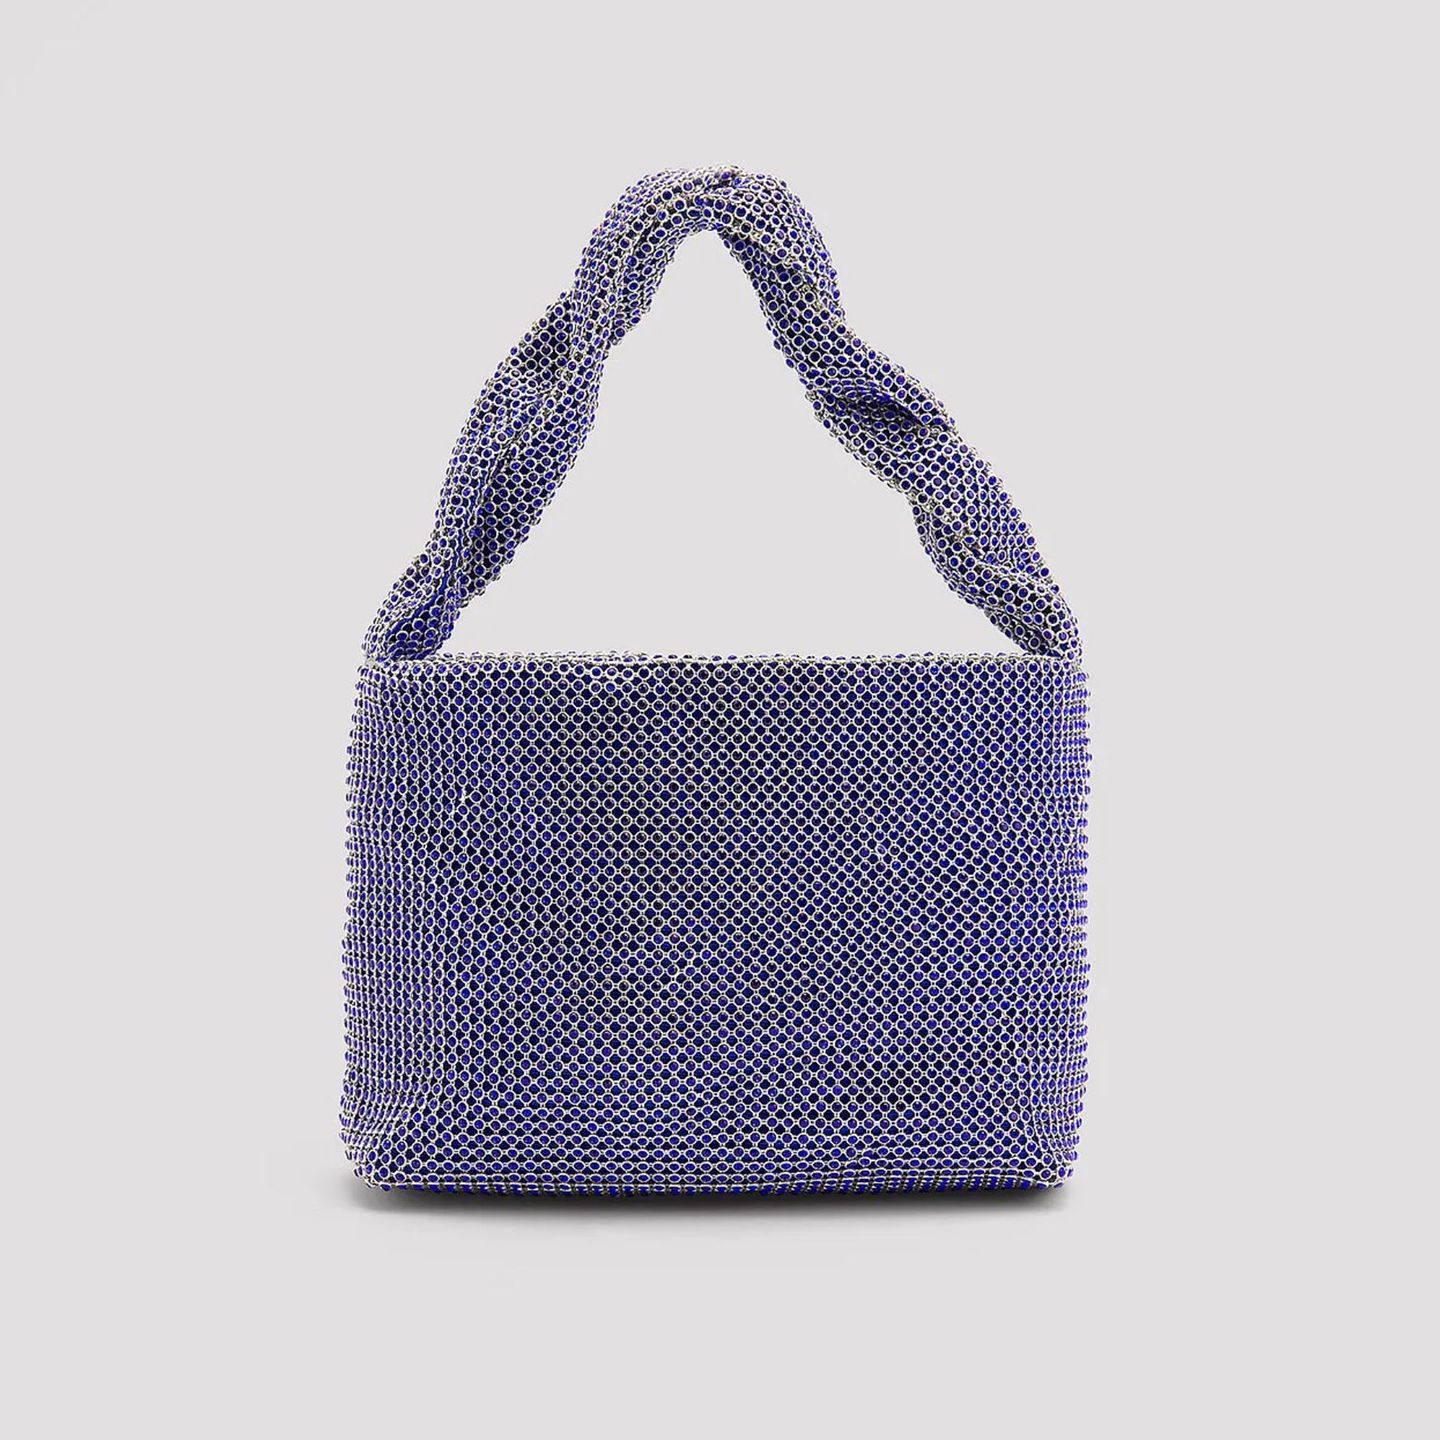 Diese kleine Handtasche hat nicht nur Platz für all unsere Sachen, sondern sieht auch noch glänzend aus! Das blaue Modell besticht durch seinen Strassbesatz und den gedrehten Griff. Von Na-kd, kostet ca. 47 Euro. 